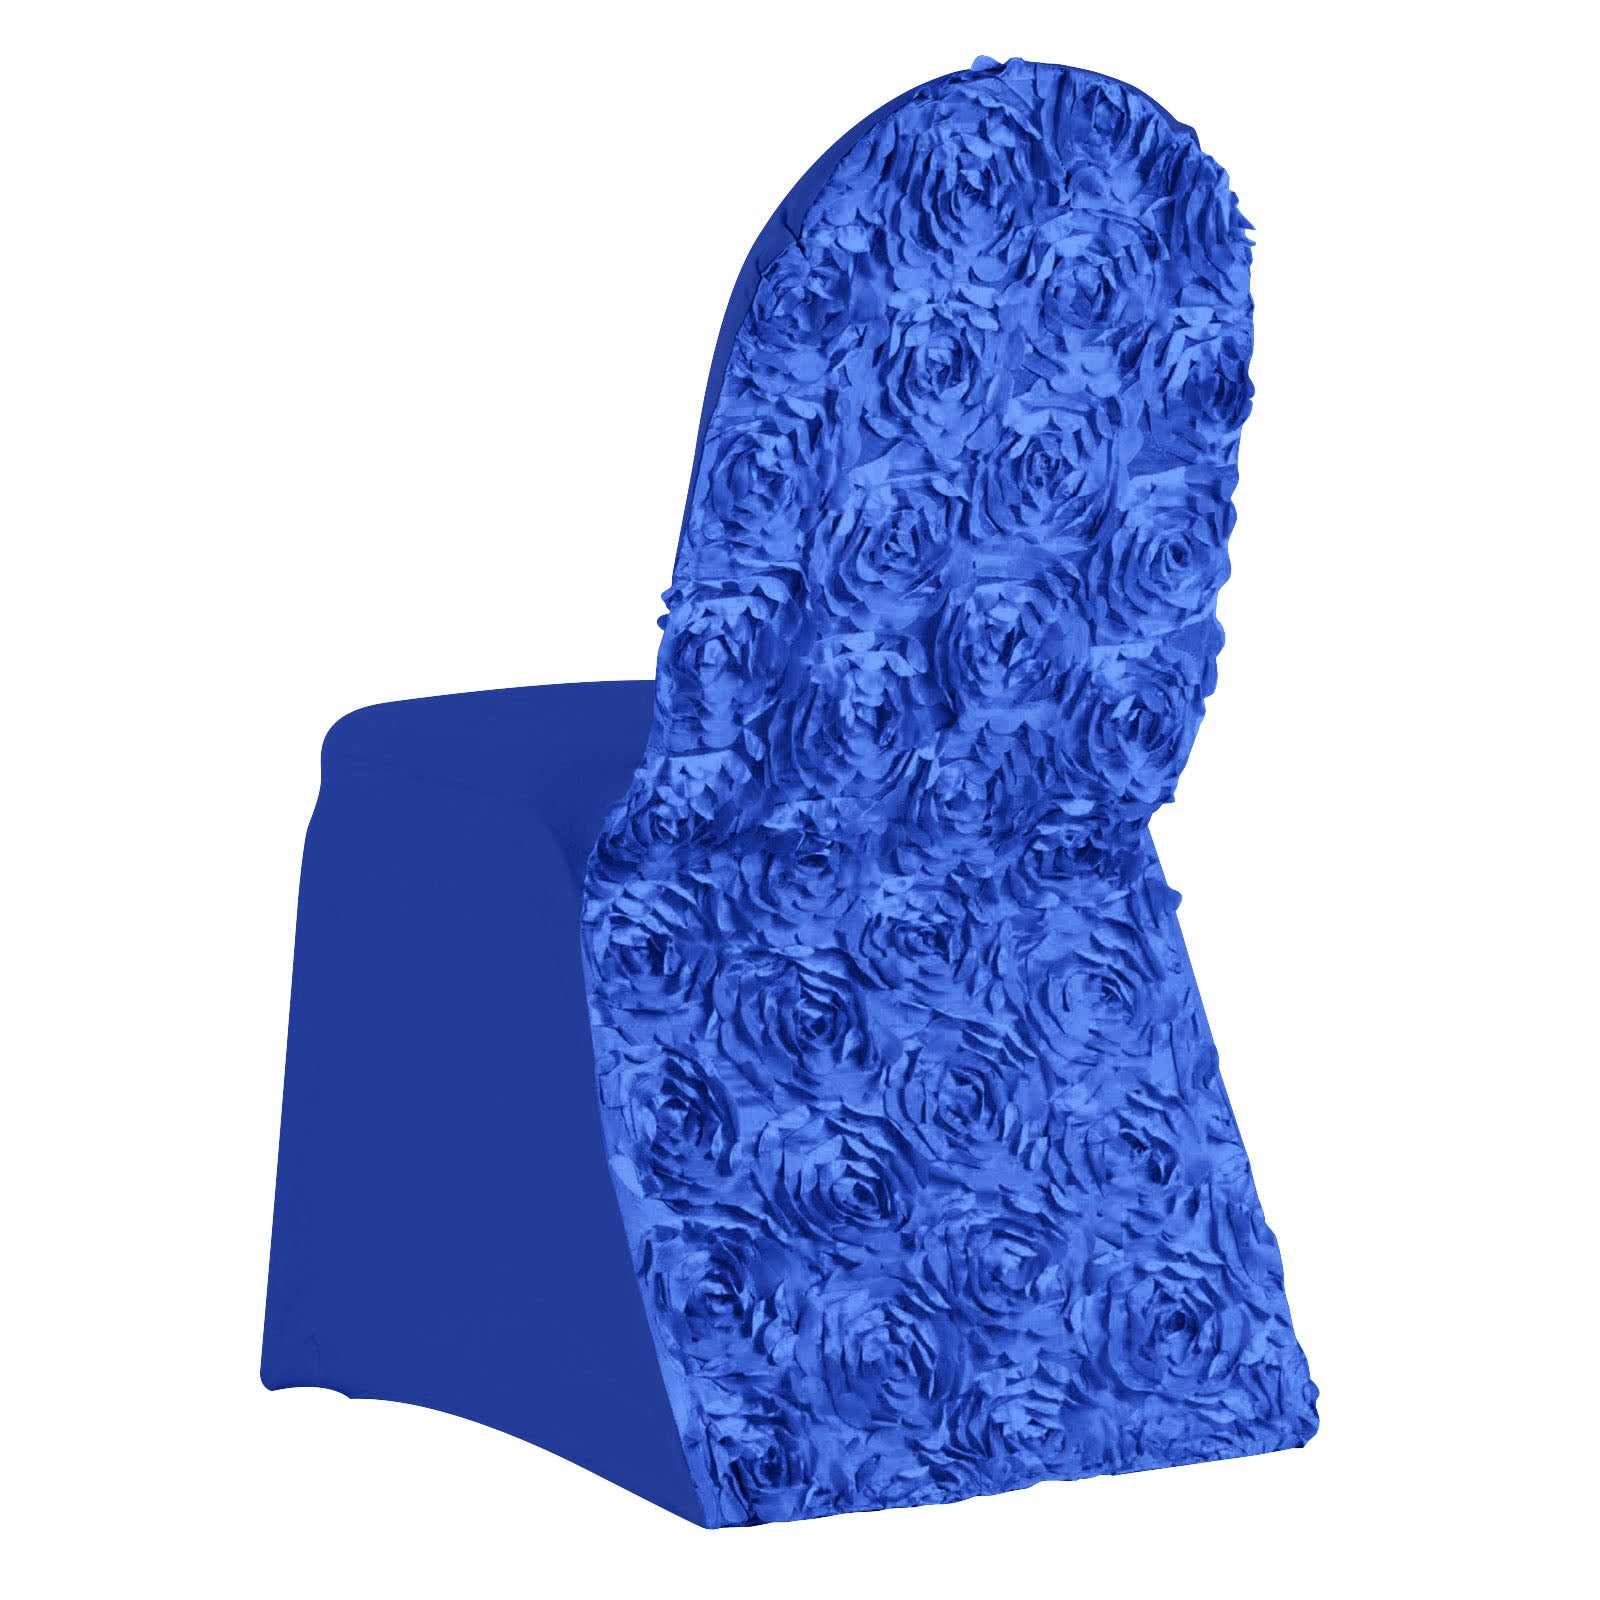 Royal Blue Spandex Banquet Chair Cover